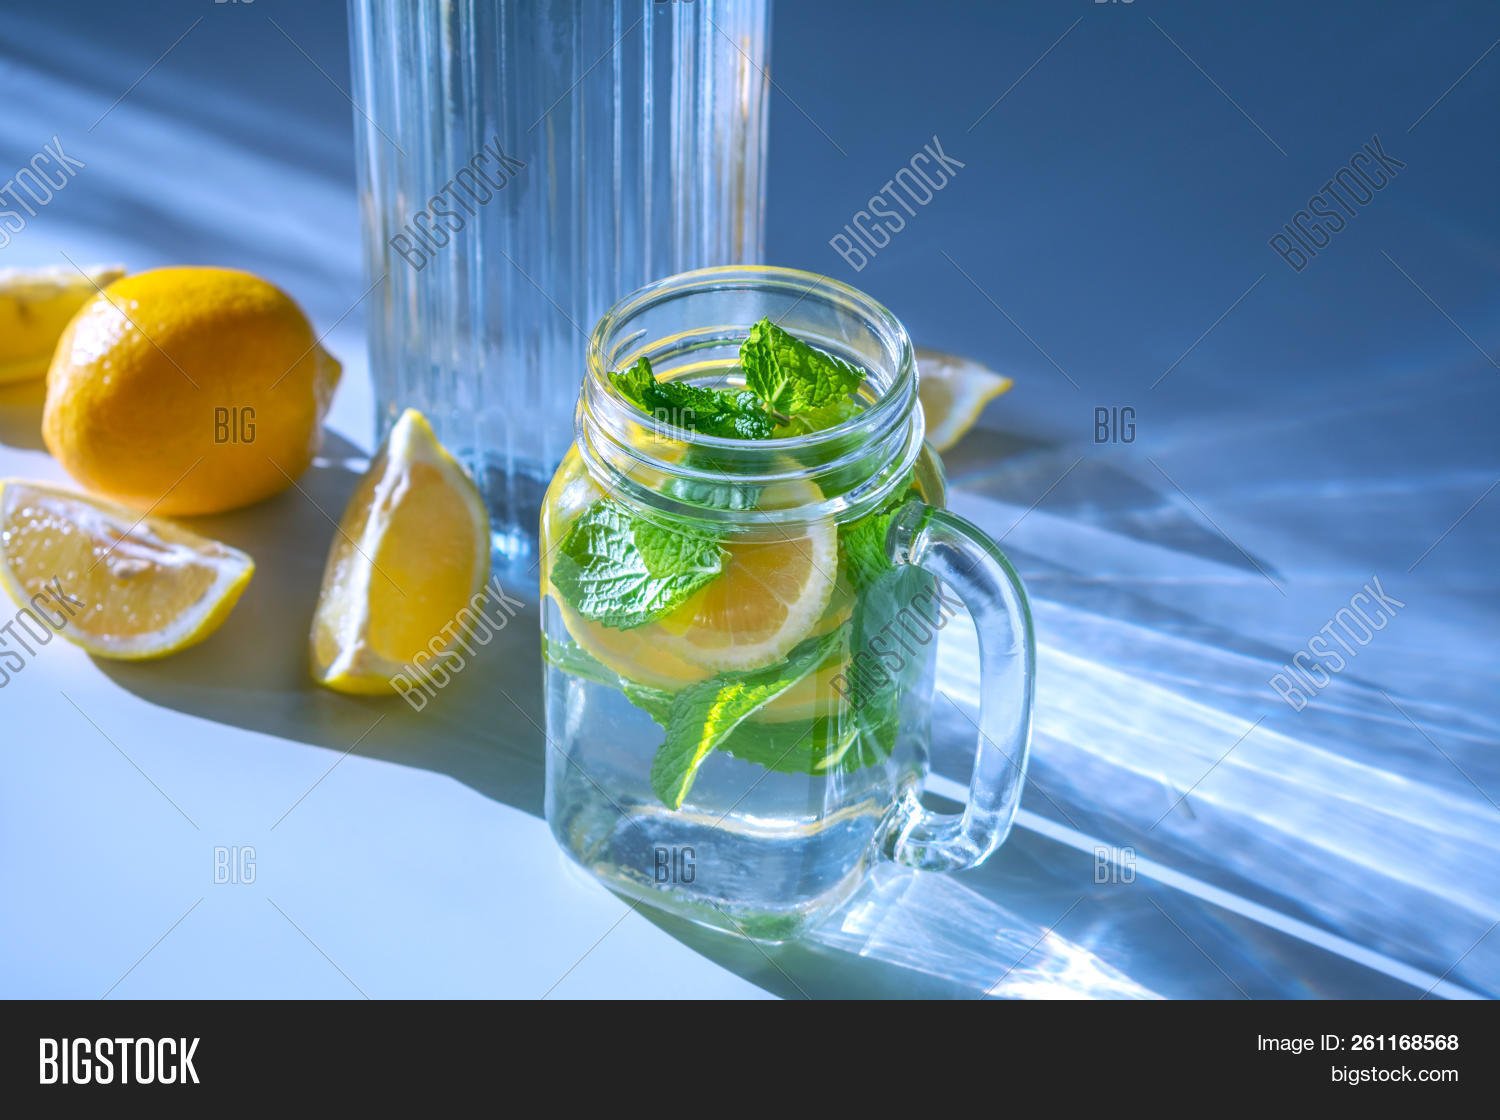 Лимон на литр воды. Вода с лимоном и мятой. Стакан воды с лимоном. Лимон. Лимонная вода с мятой.